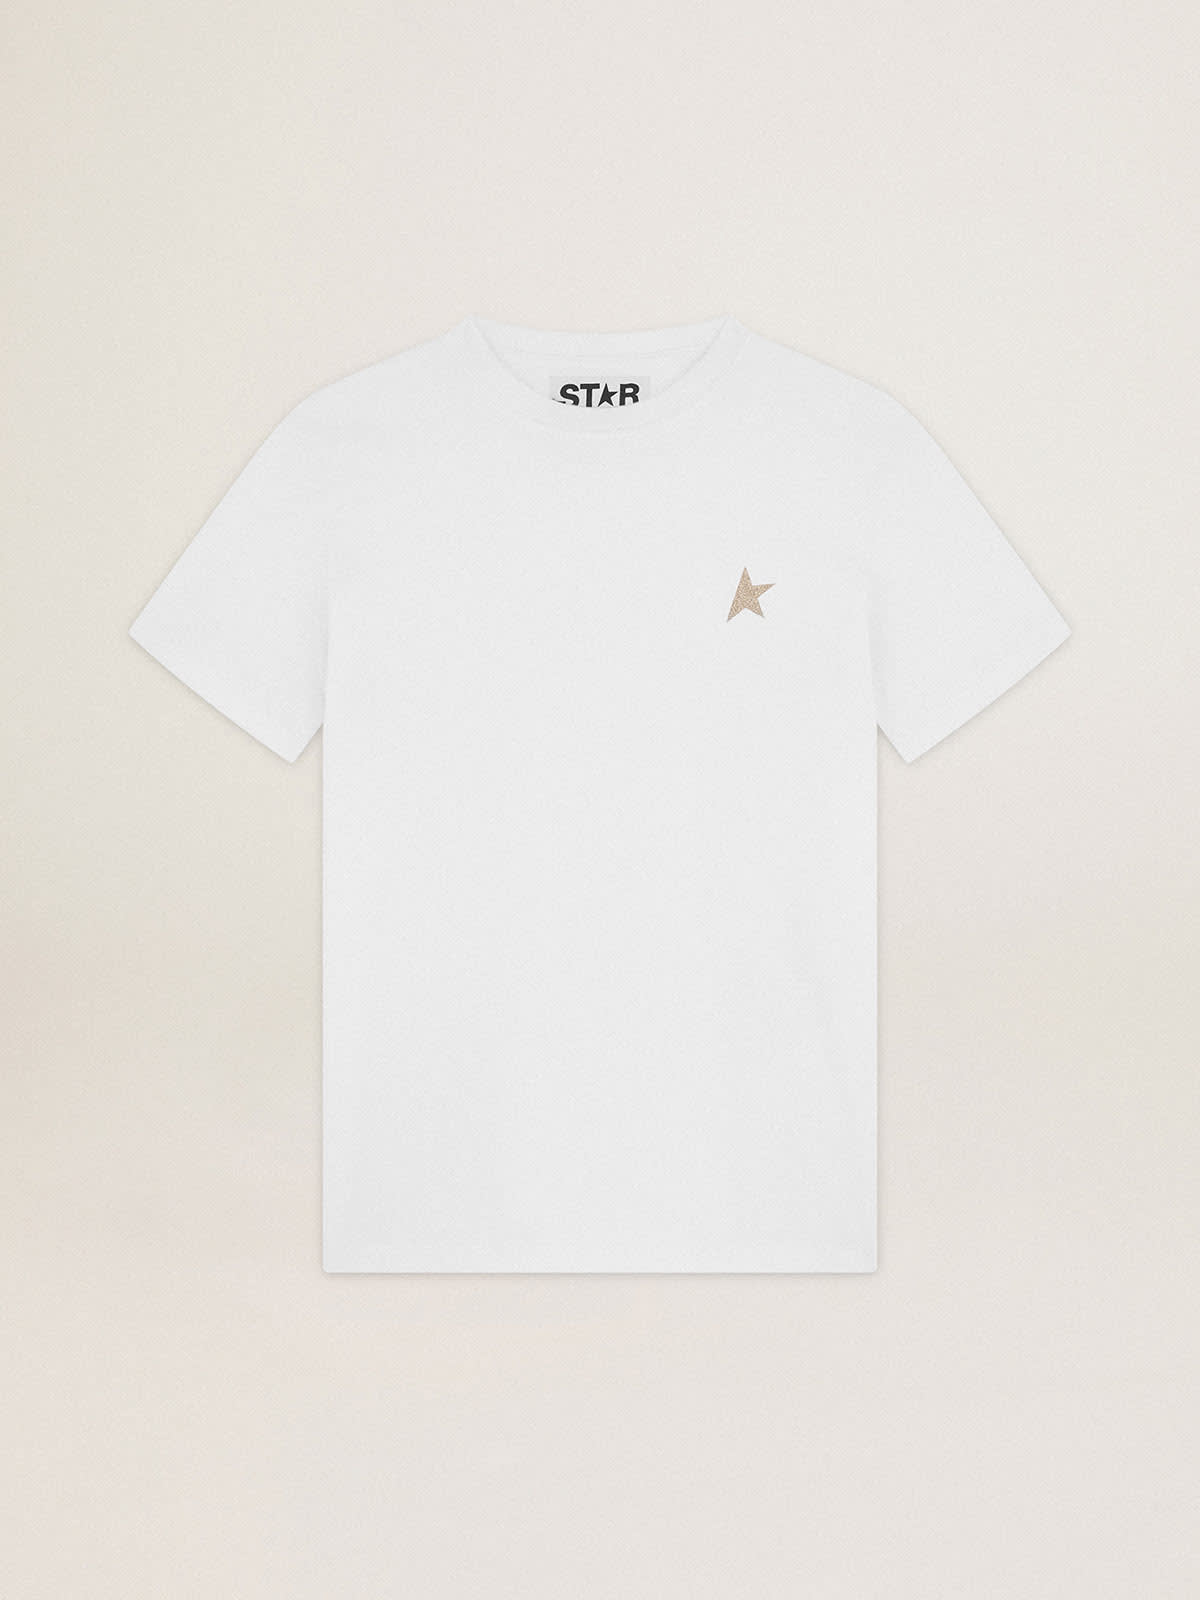 Golden Goose - T-shirt blanc pour femme avec étoile à paillettes dorées sur le devant in 